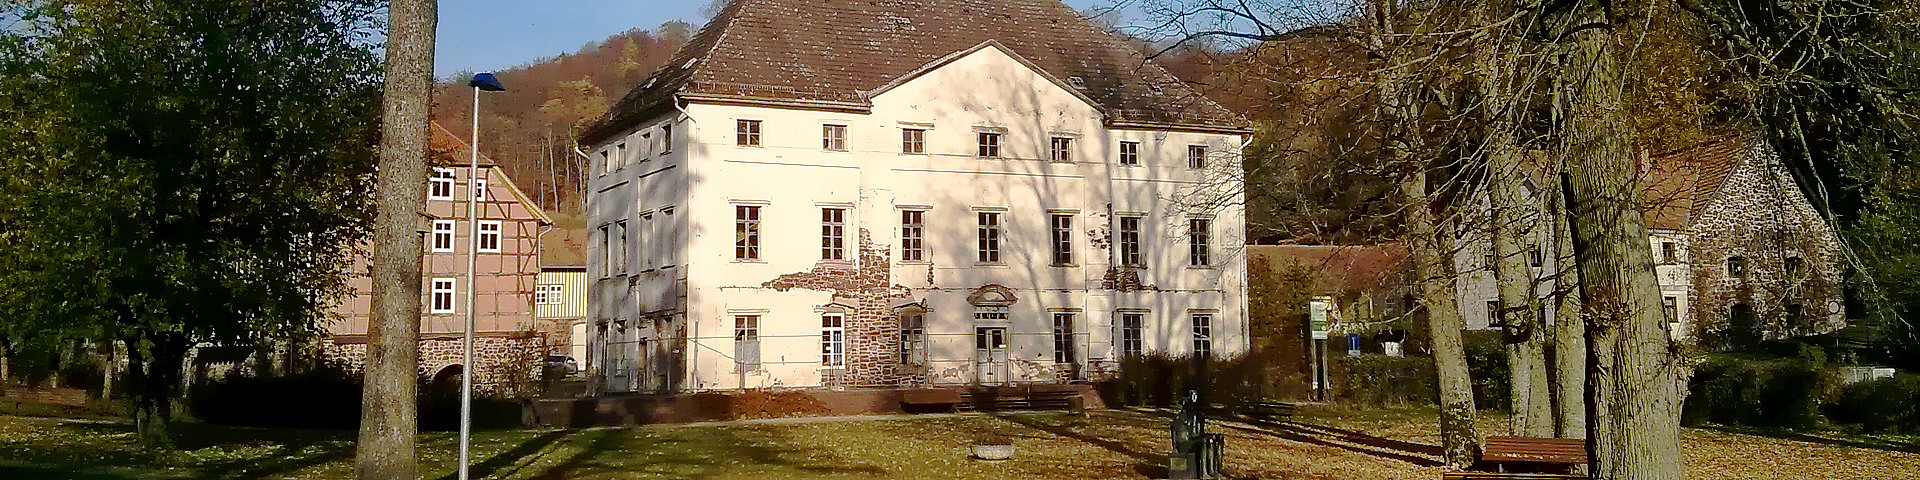 Neues Schloss Neustadt im Jahr 2016